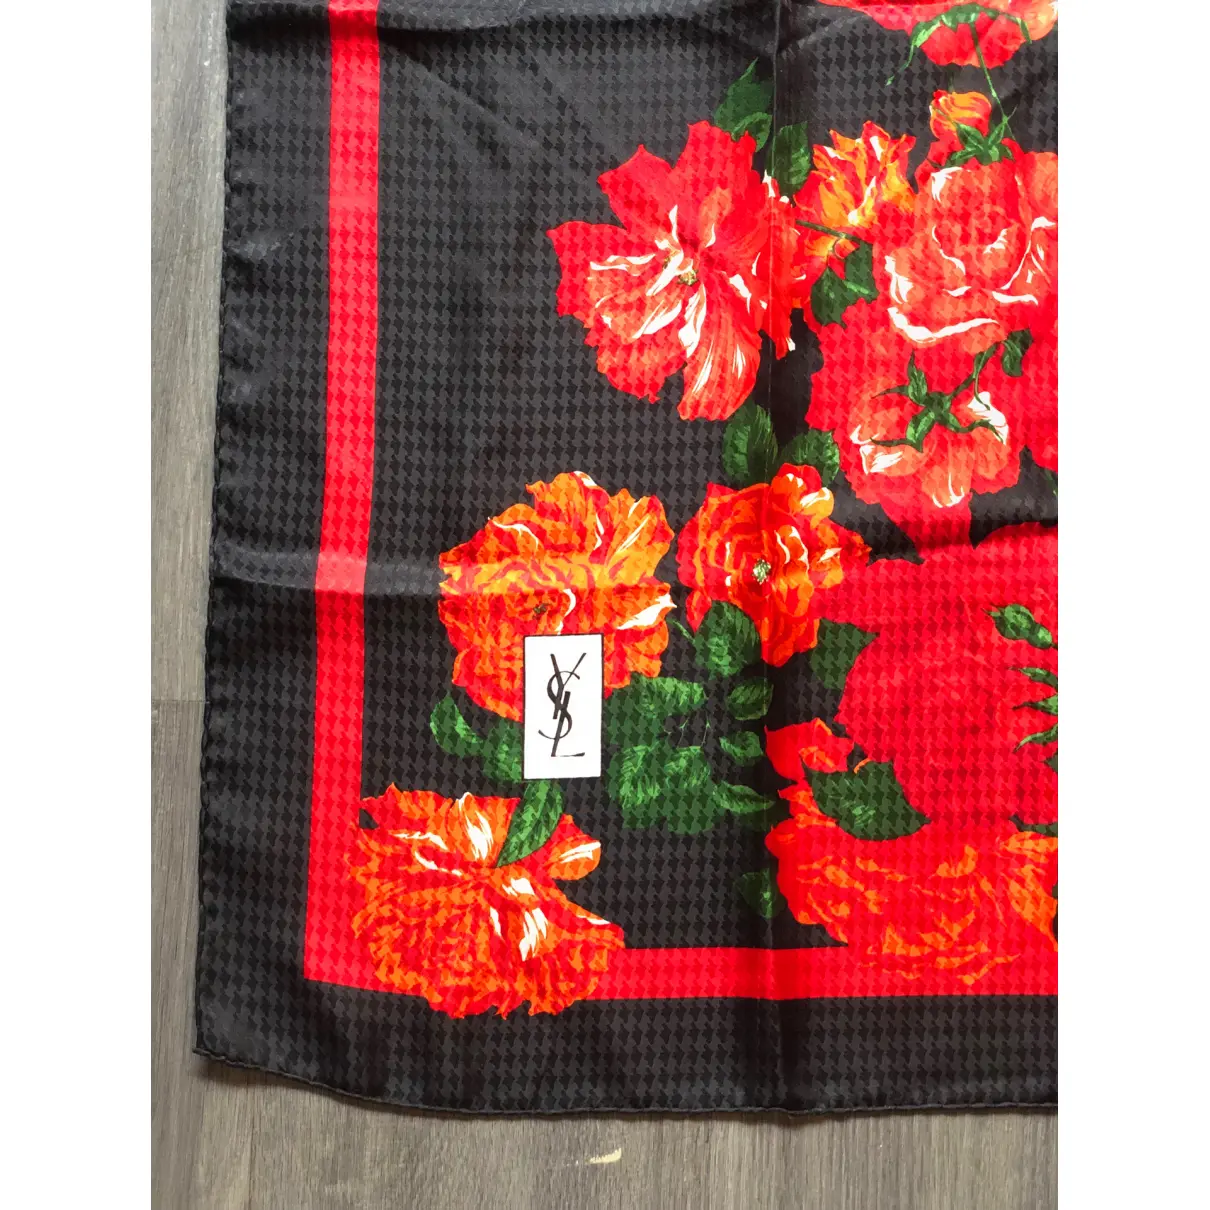 Buy Yves Saint Laurent Silk handkerchief online